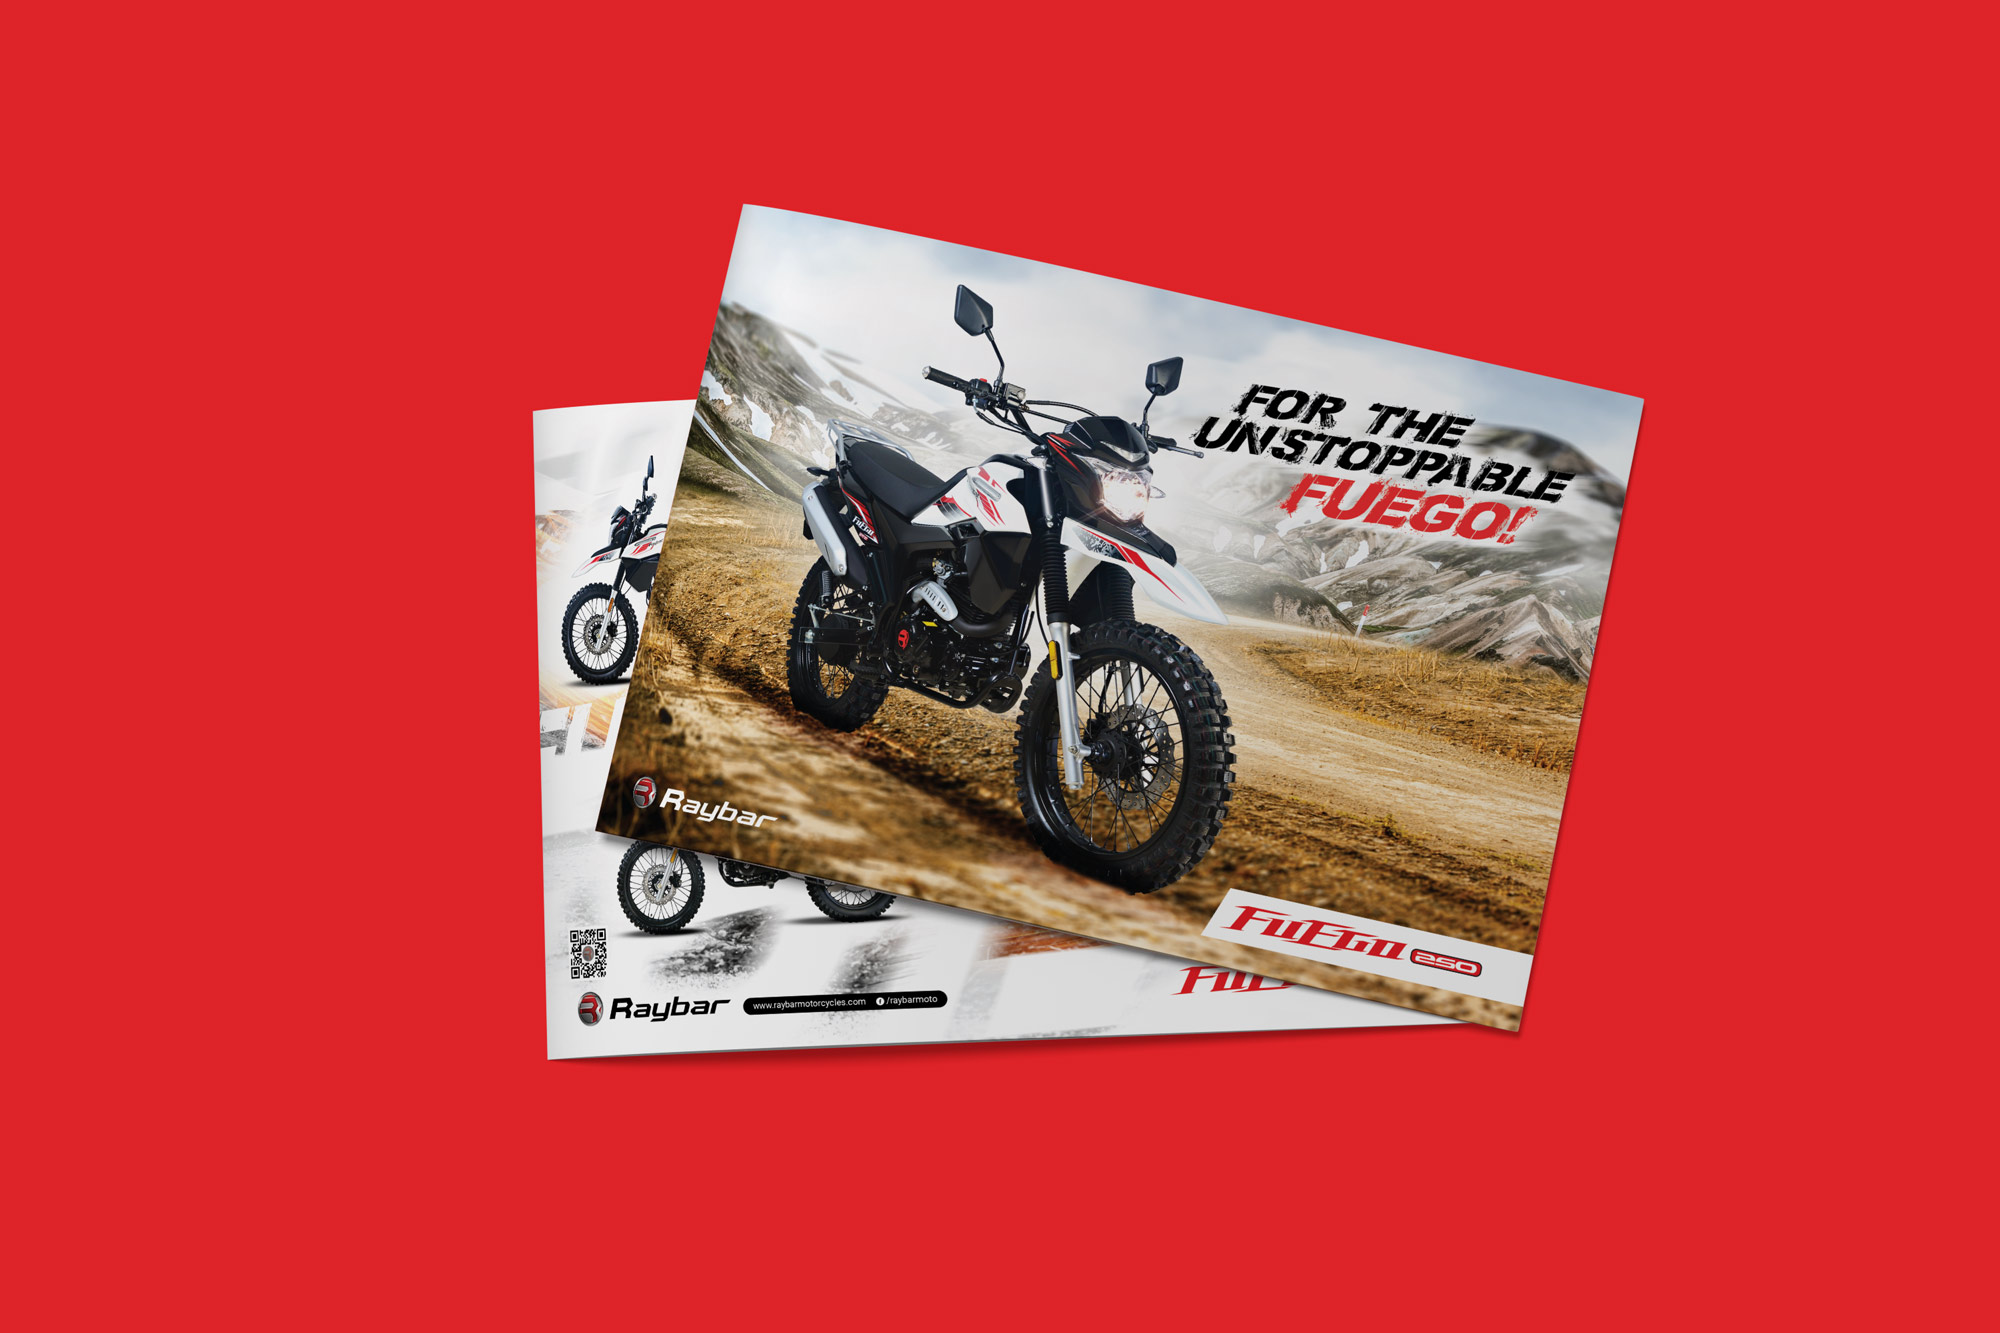 Raybar - Fuego 250 Bike Brochure